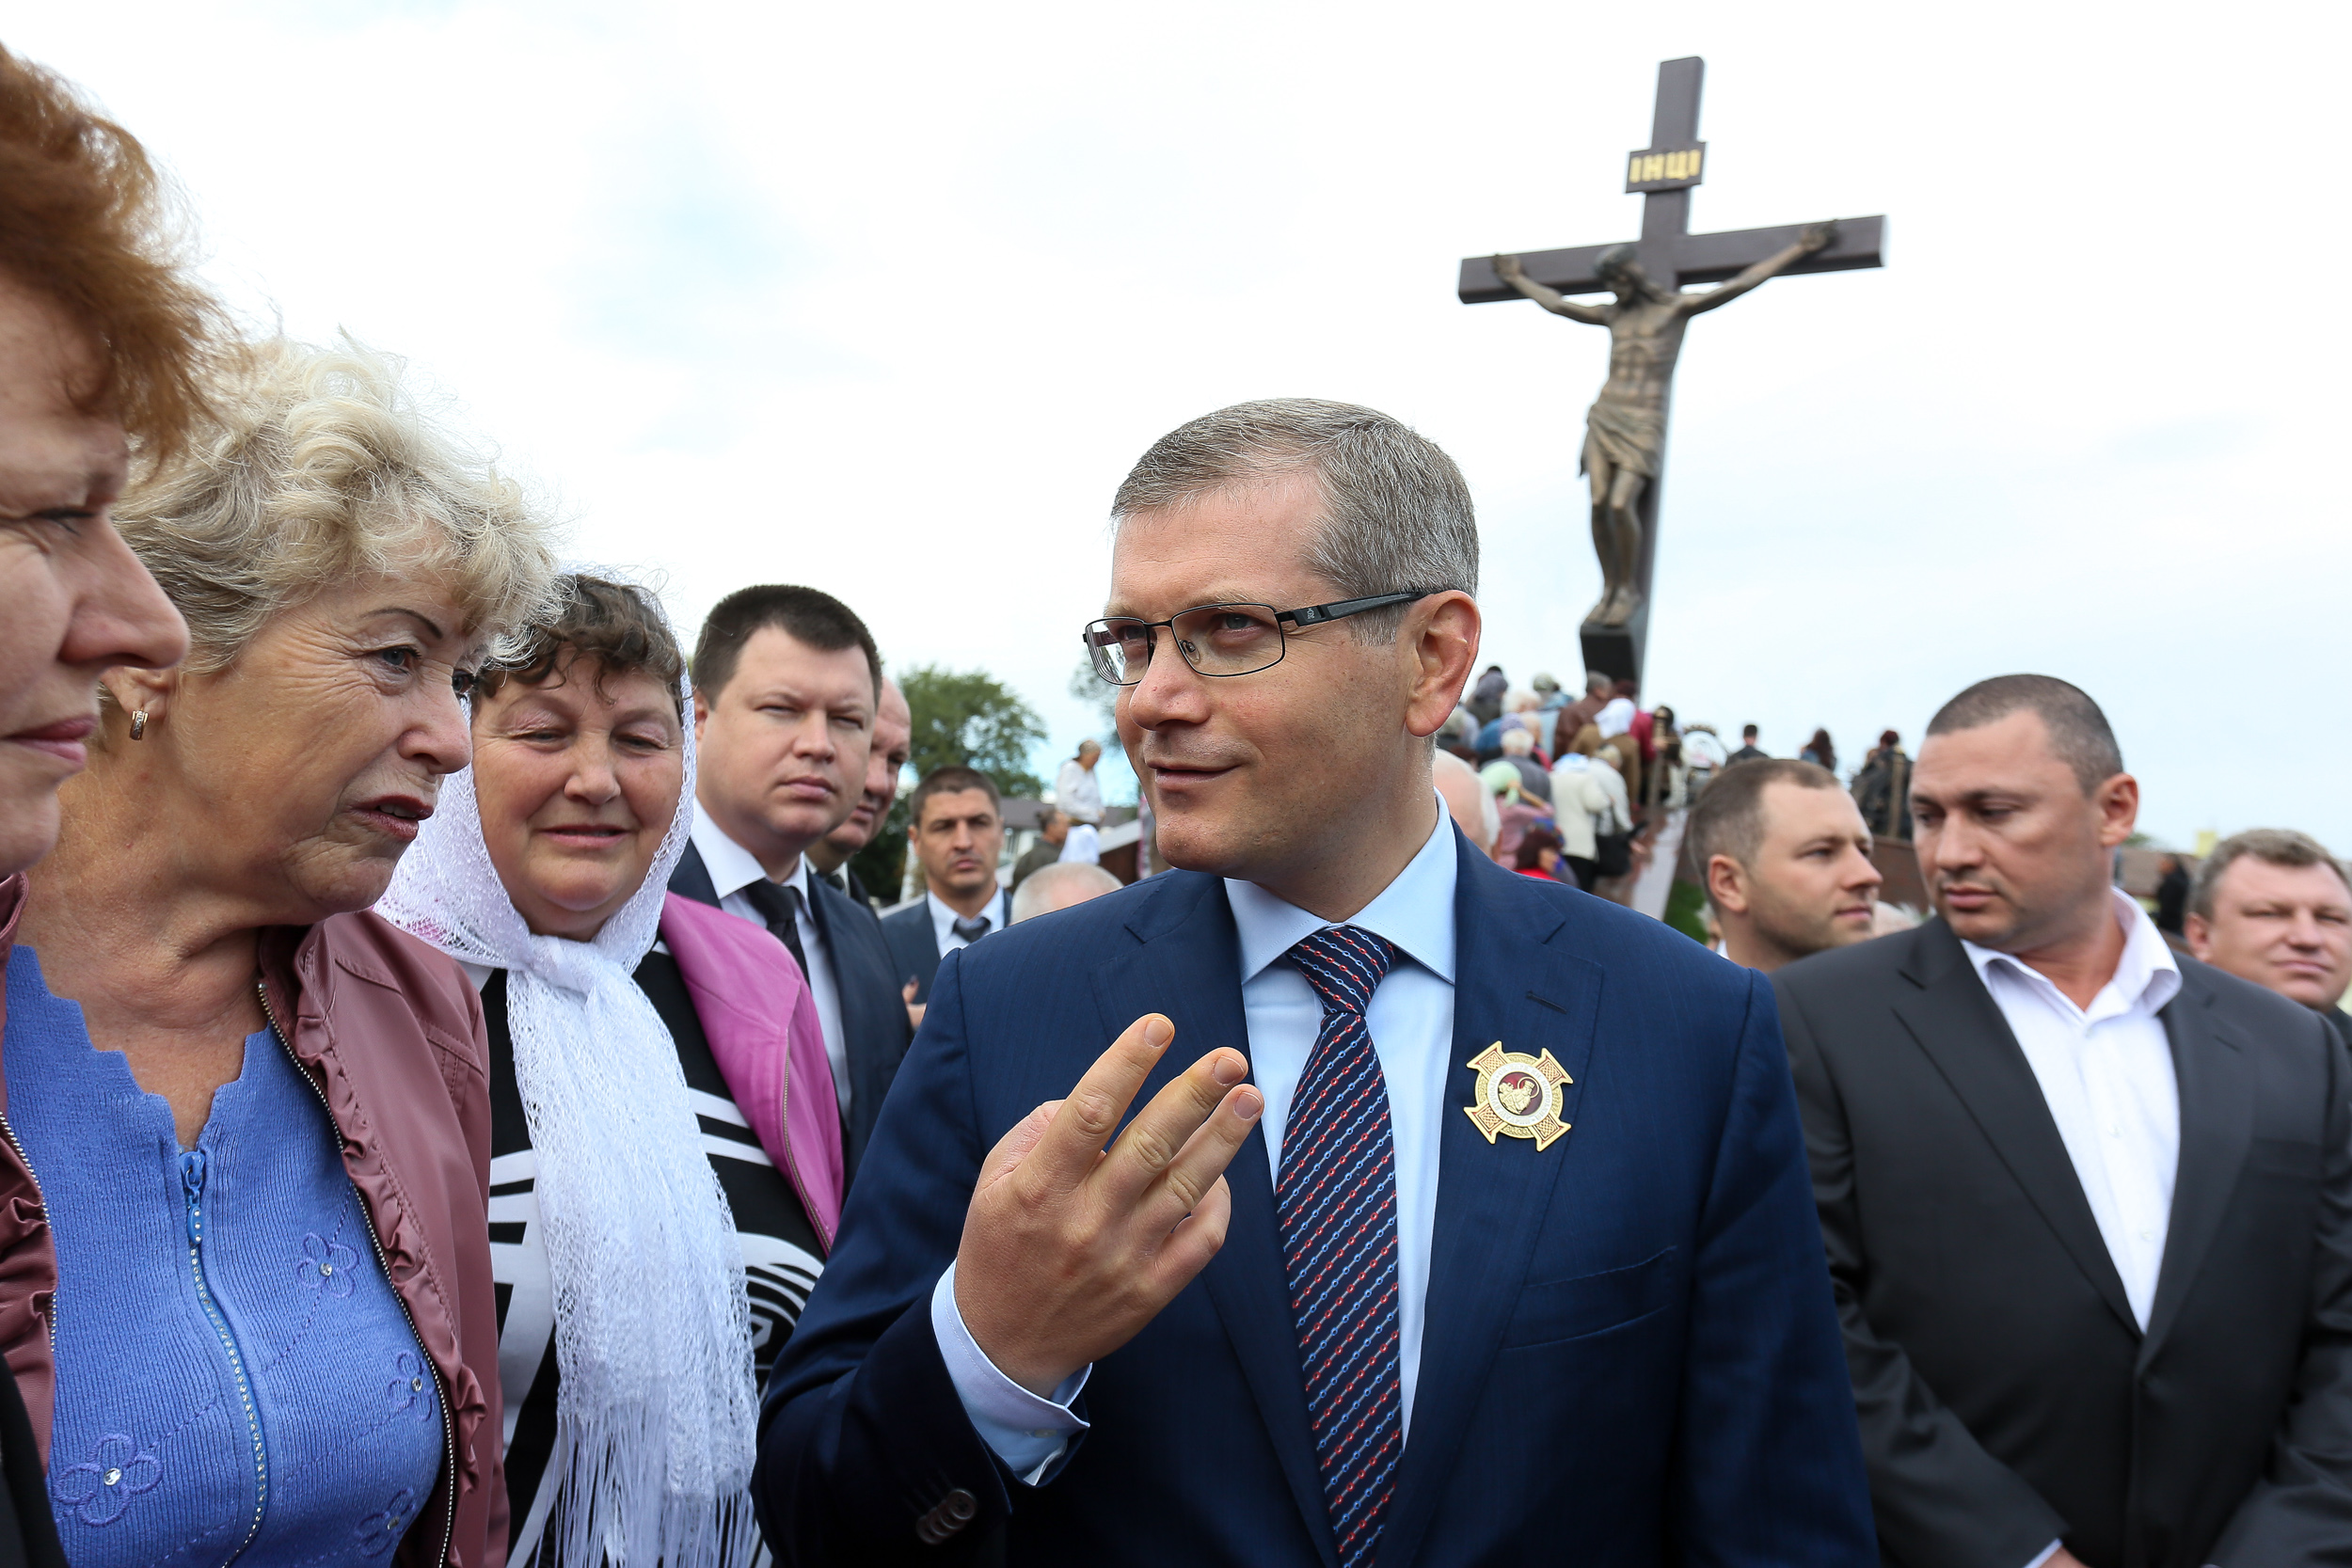 Олександр Вілкул відкрив у Дніпродзержинську найбільшу в Україні 9-метрову статую Христа Спасителя